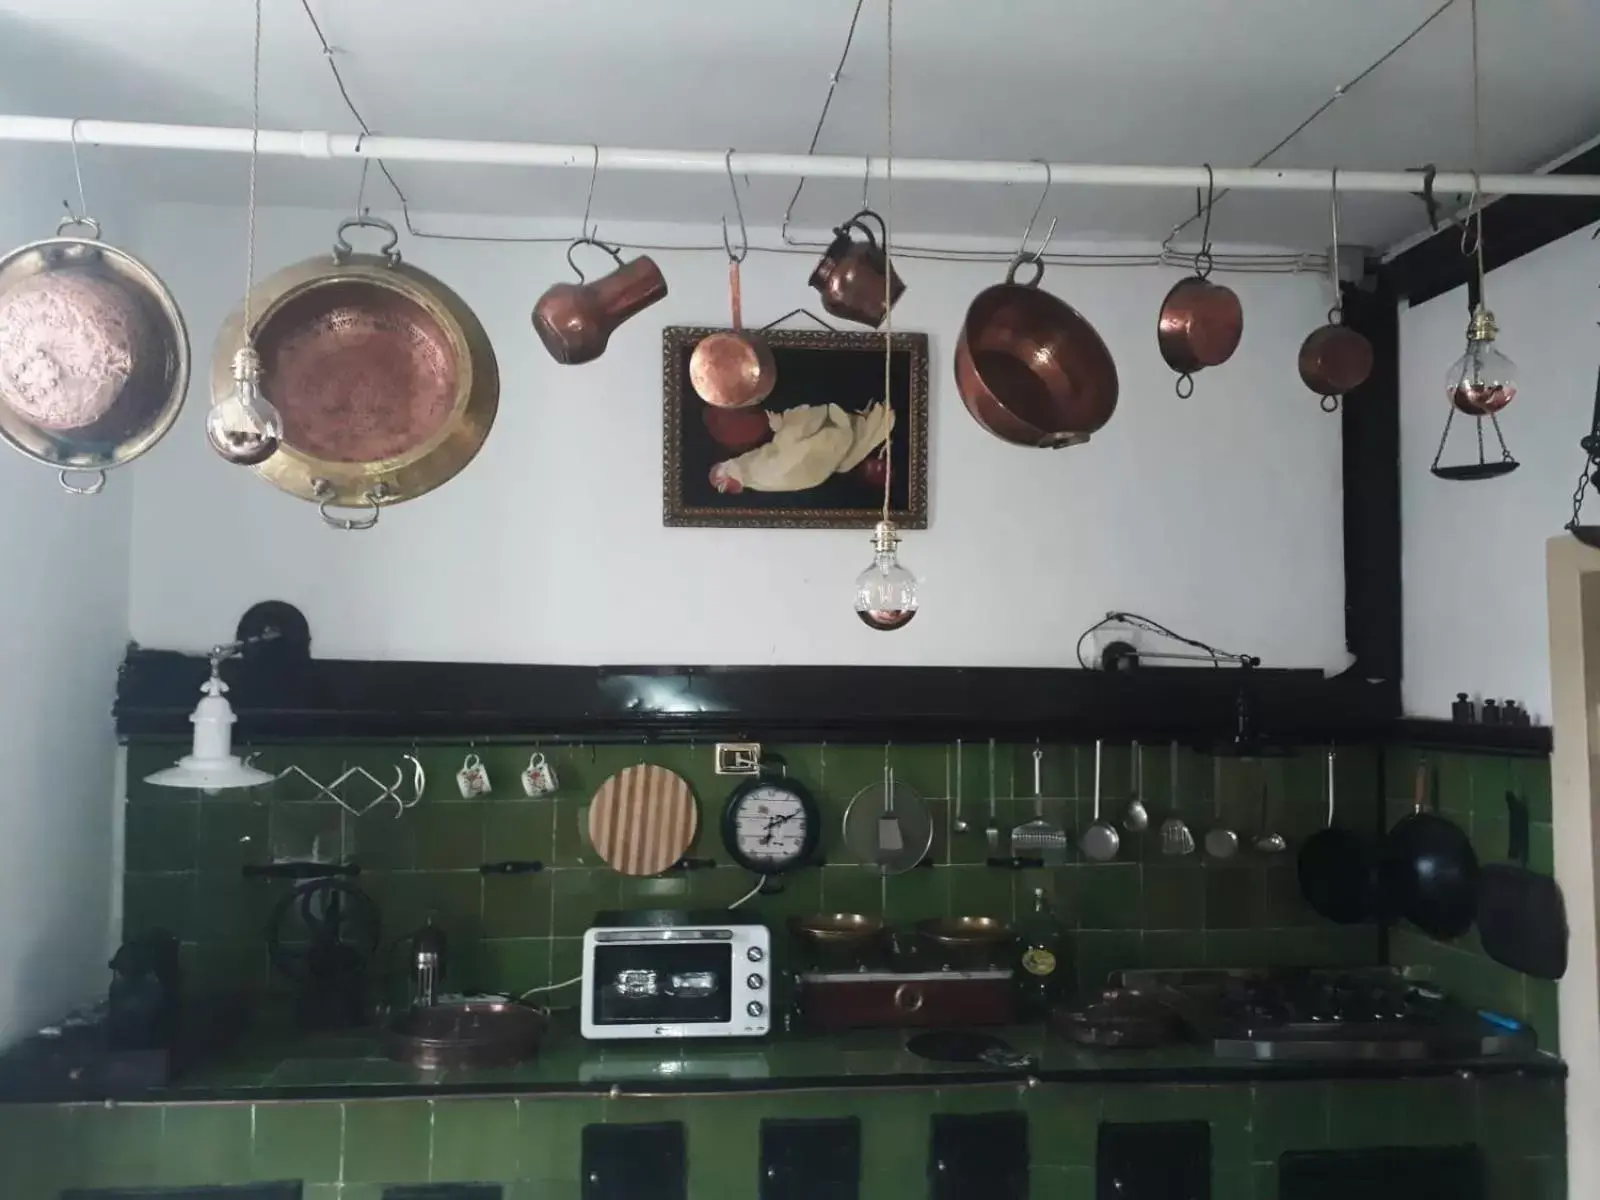 Communal kitchen in Casato Lioy